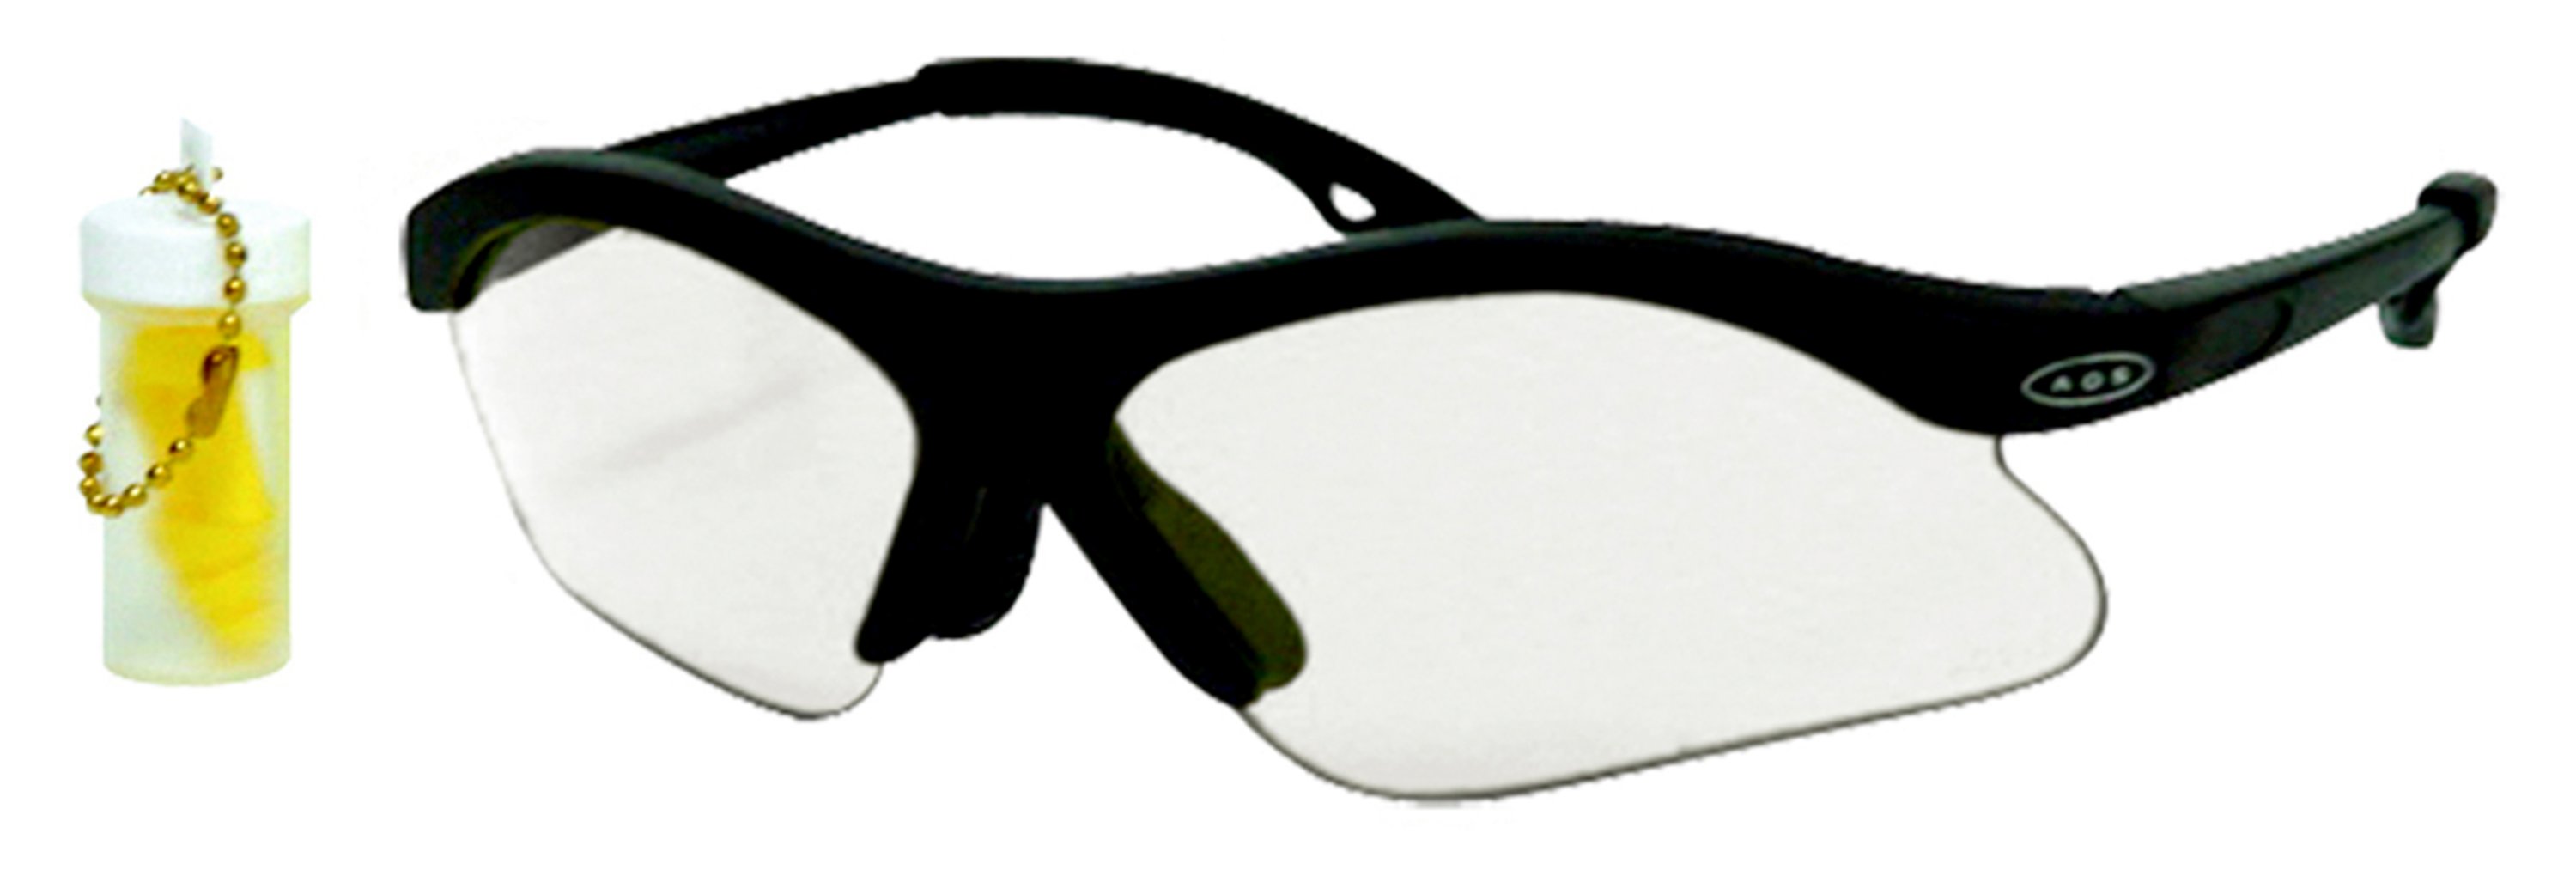 Peltor Youth Shooting Eyewear with Free Earplugs, Clear, 1 pair/pack - image 2 of 2